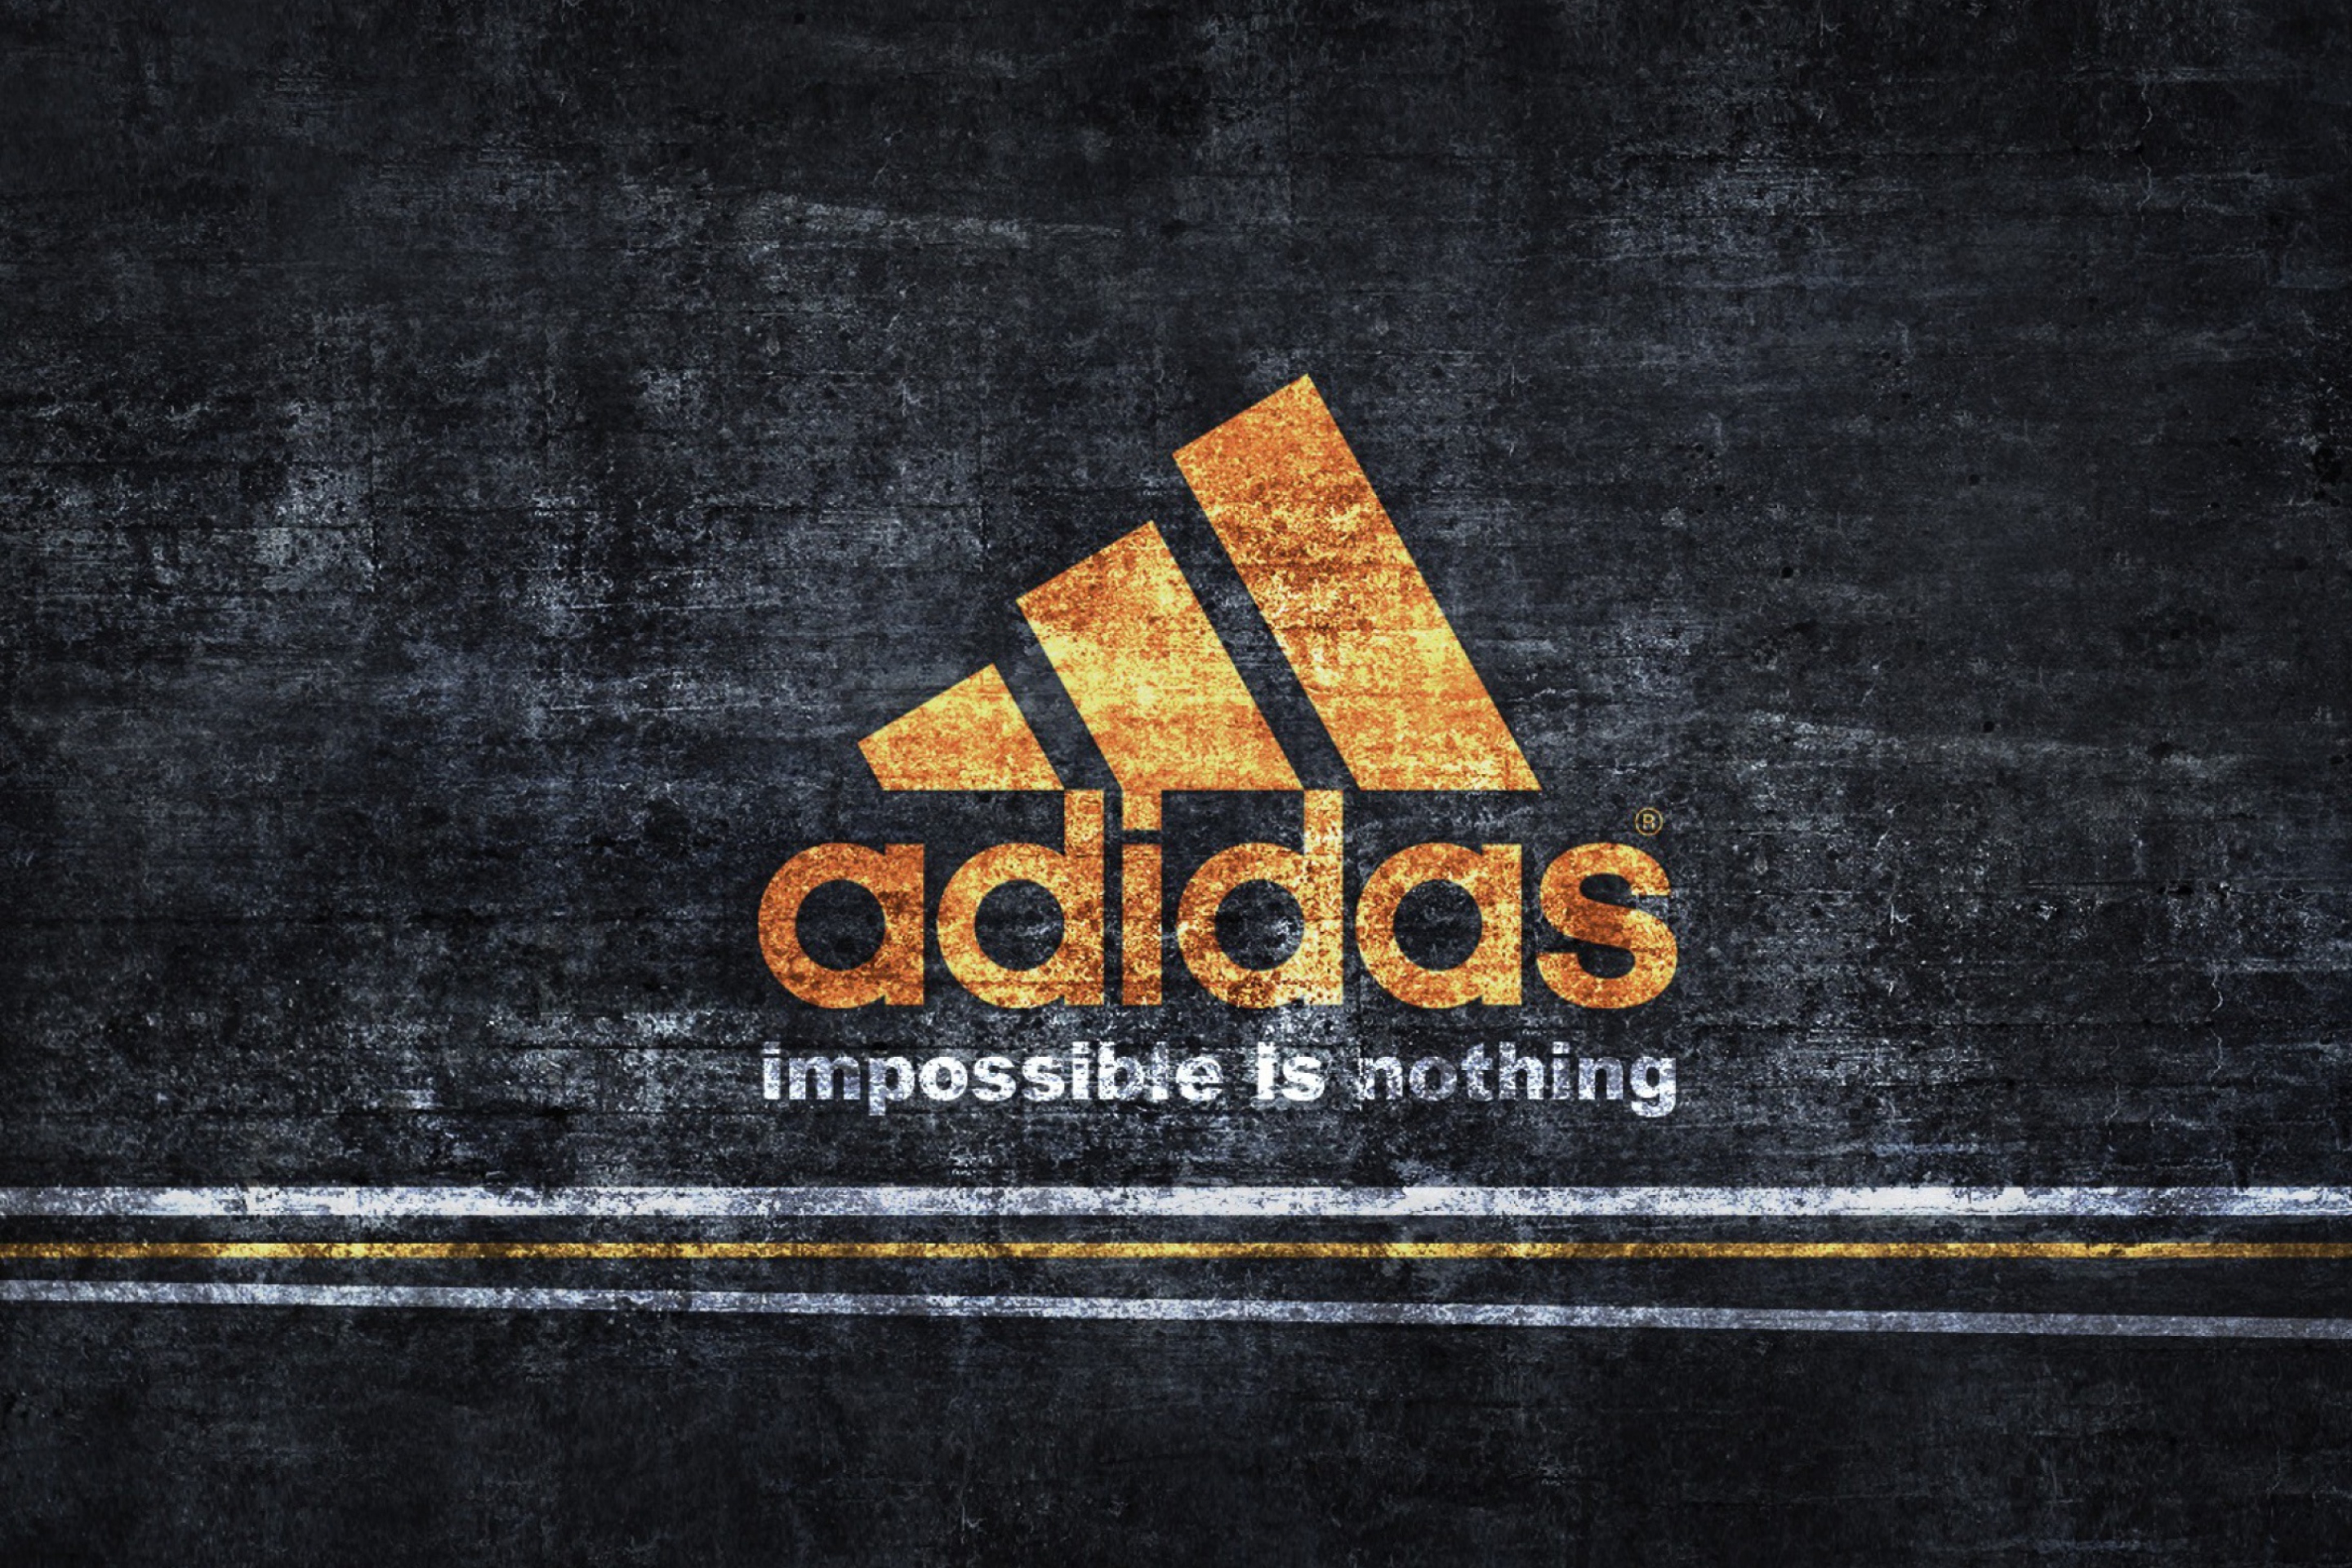 Das Adidas logo Wallpaper 2880x1920